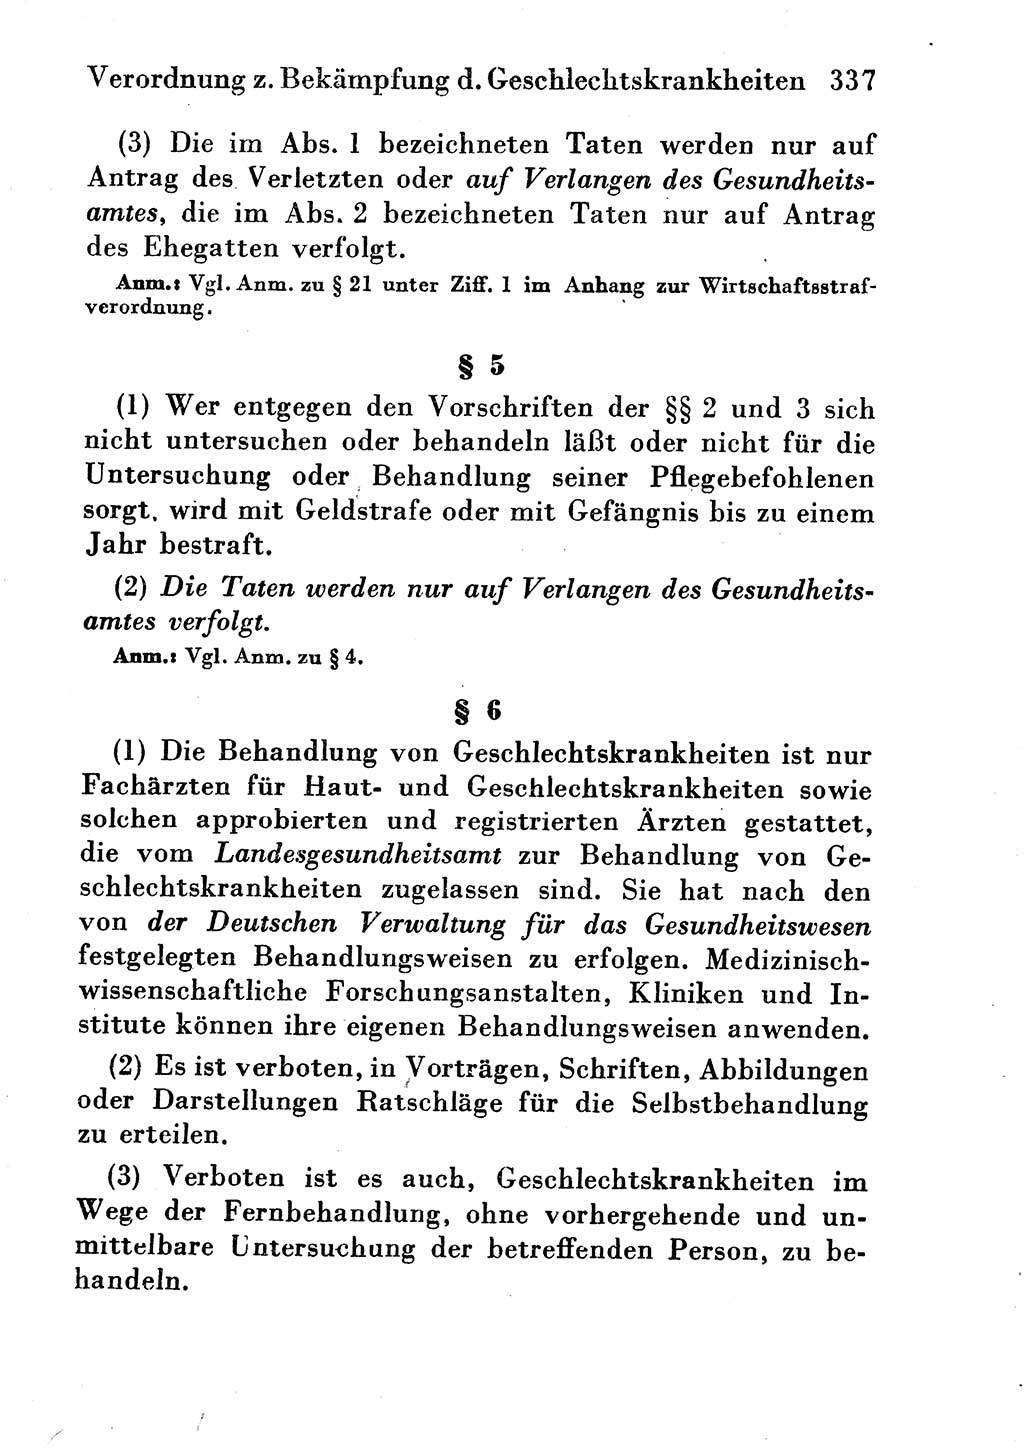 Strafgesetzbuch (StGB) und andere Strafgesetze [Deutsche Demokratische Republik (DDR)] 1954, Seite 337 (StGB Strafges. DDR 1954, S. 337)